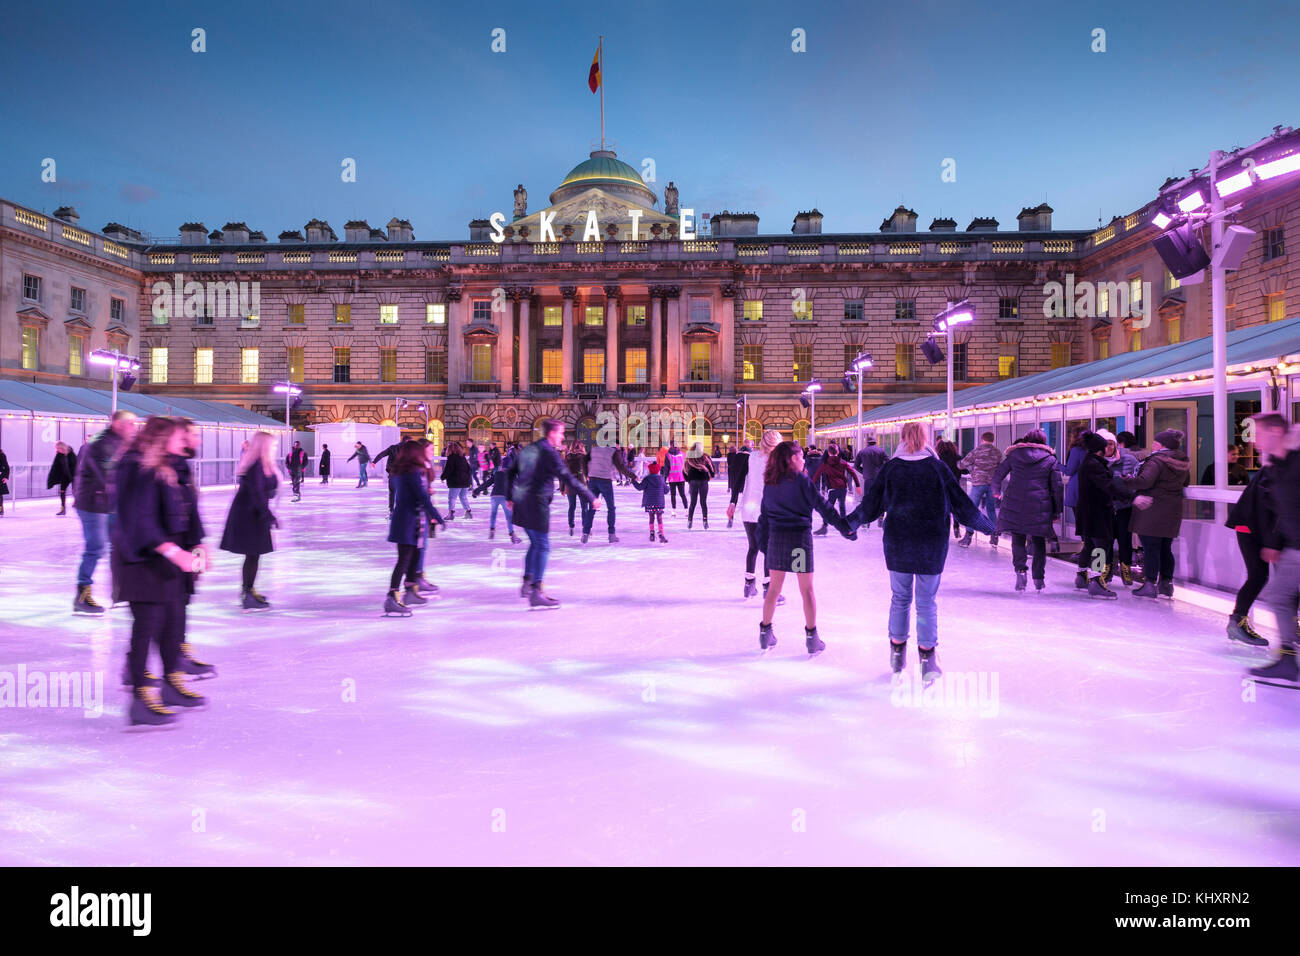 En début de soirée le patinage sur la patinoire de Noël, Somerset House, Londres, Angleterre, Royaume-Uni Banque D'Images